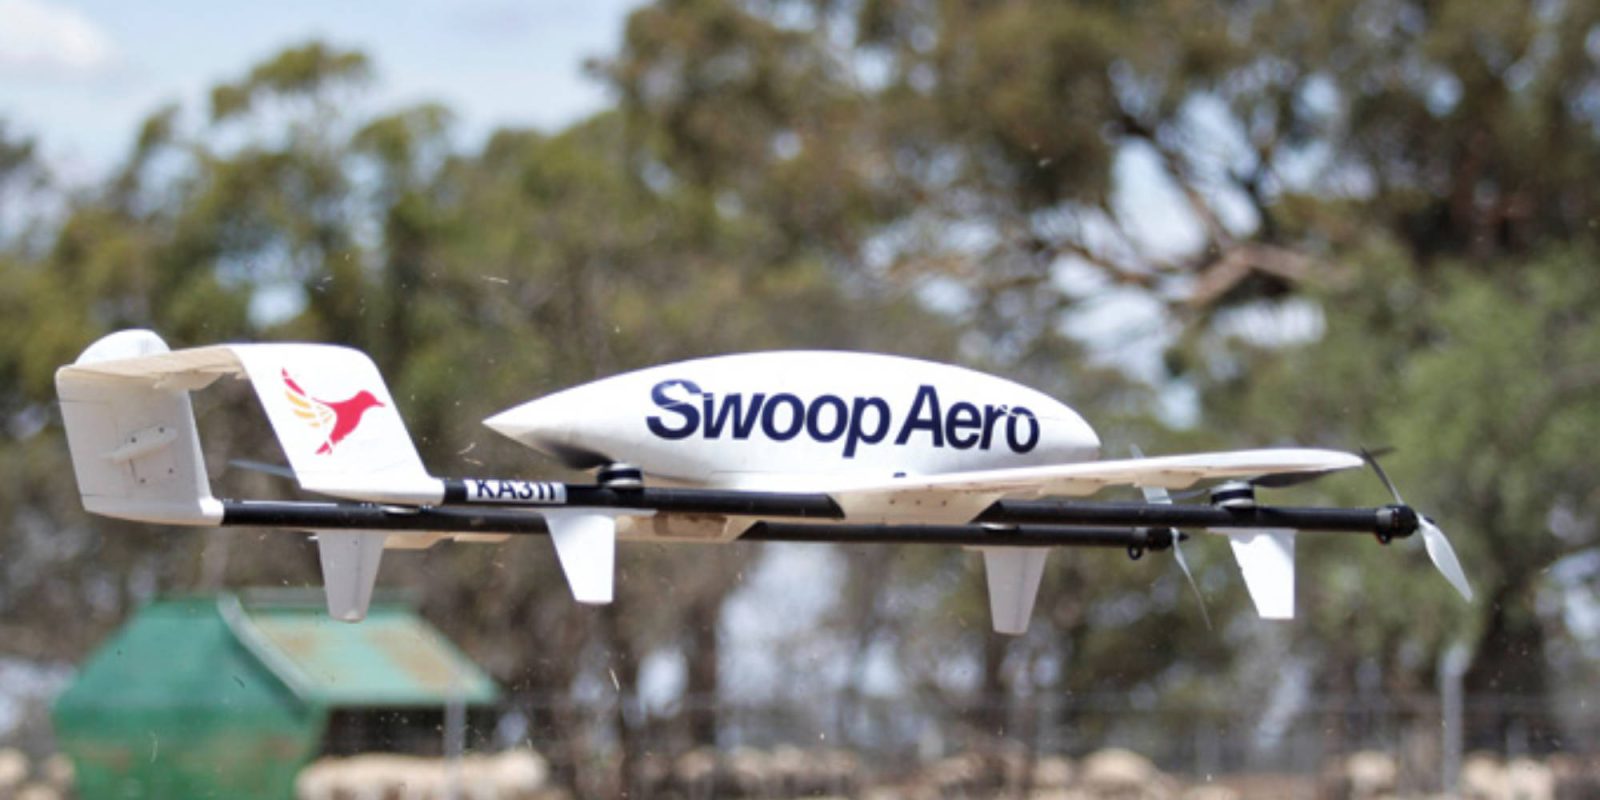 Swoop Aero drone Malawi COVID-19